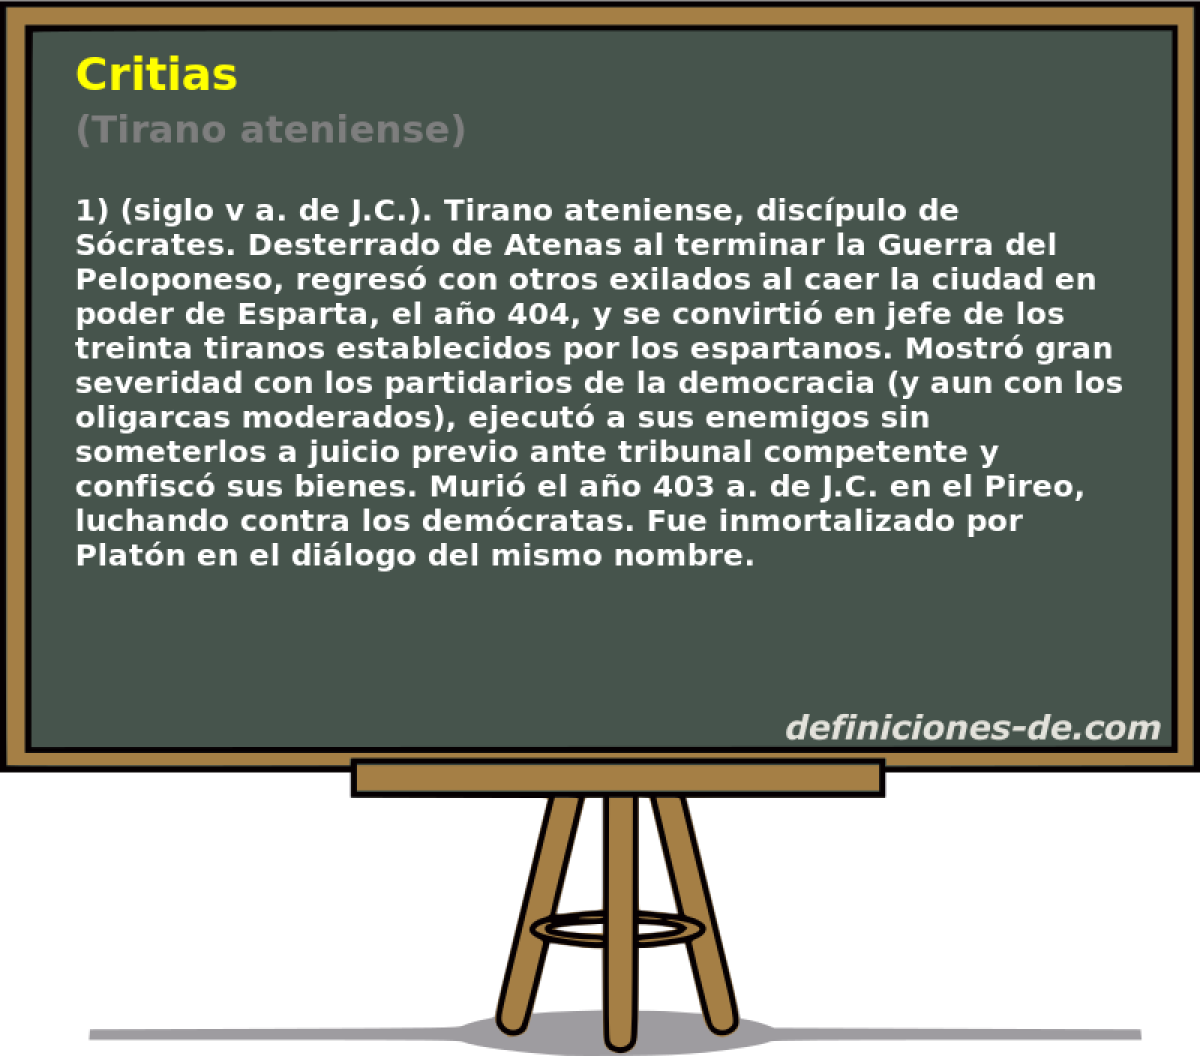 Critias (Tirano ateniense)